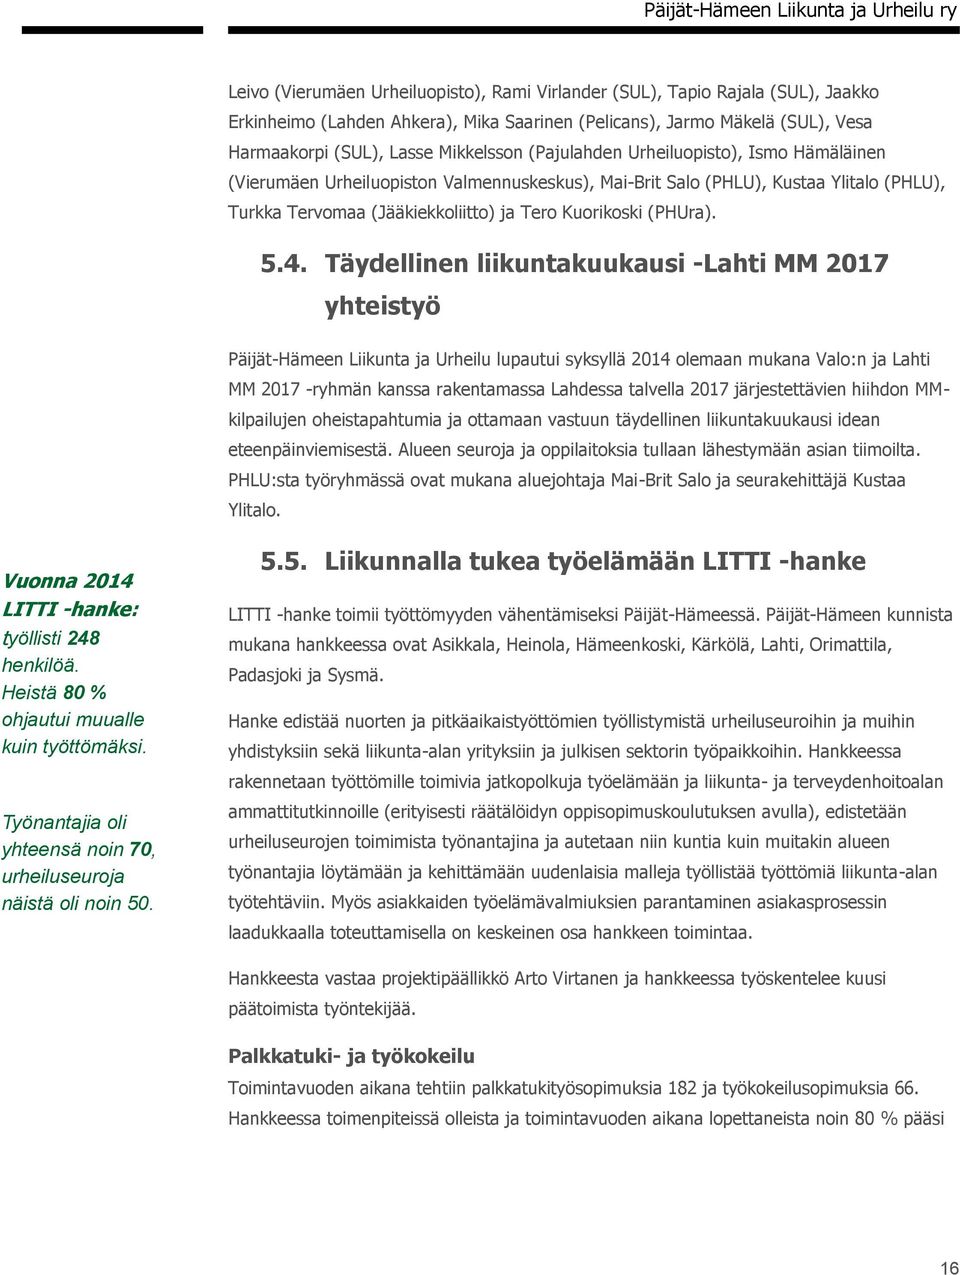 Täydellinen liikuntakuukausi -Lahti MM 2017 yhteistyö Päijät-Hämeen Liikunta ja Urheilu lupautui syksyllä 2014 olemaan mukana Valo:n ja Lahti MM 2017 -ryhmän kanssa rakentamassa Lahdessa talvella